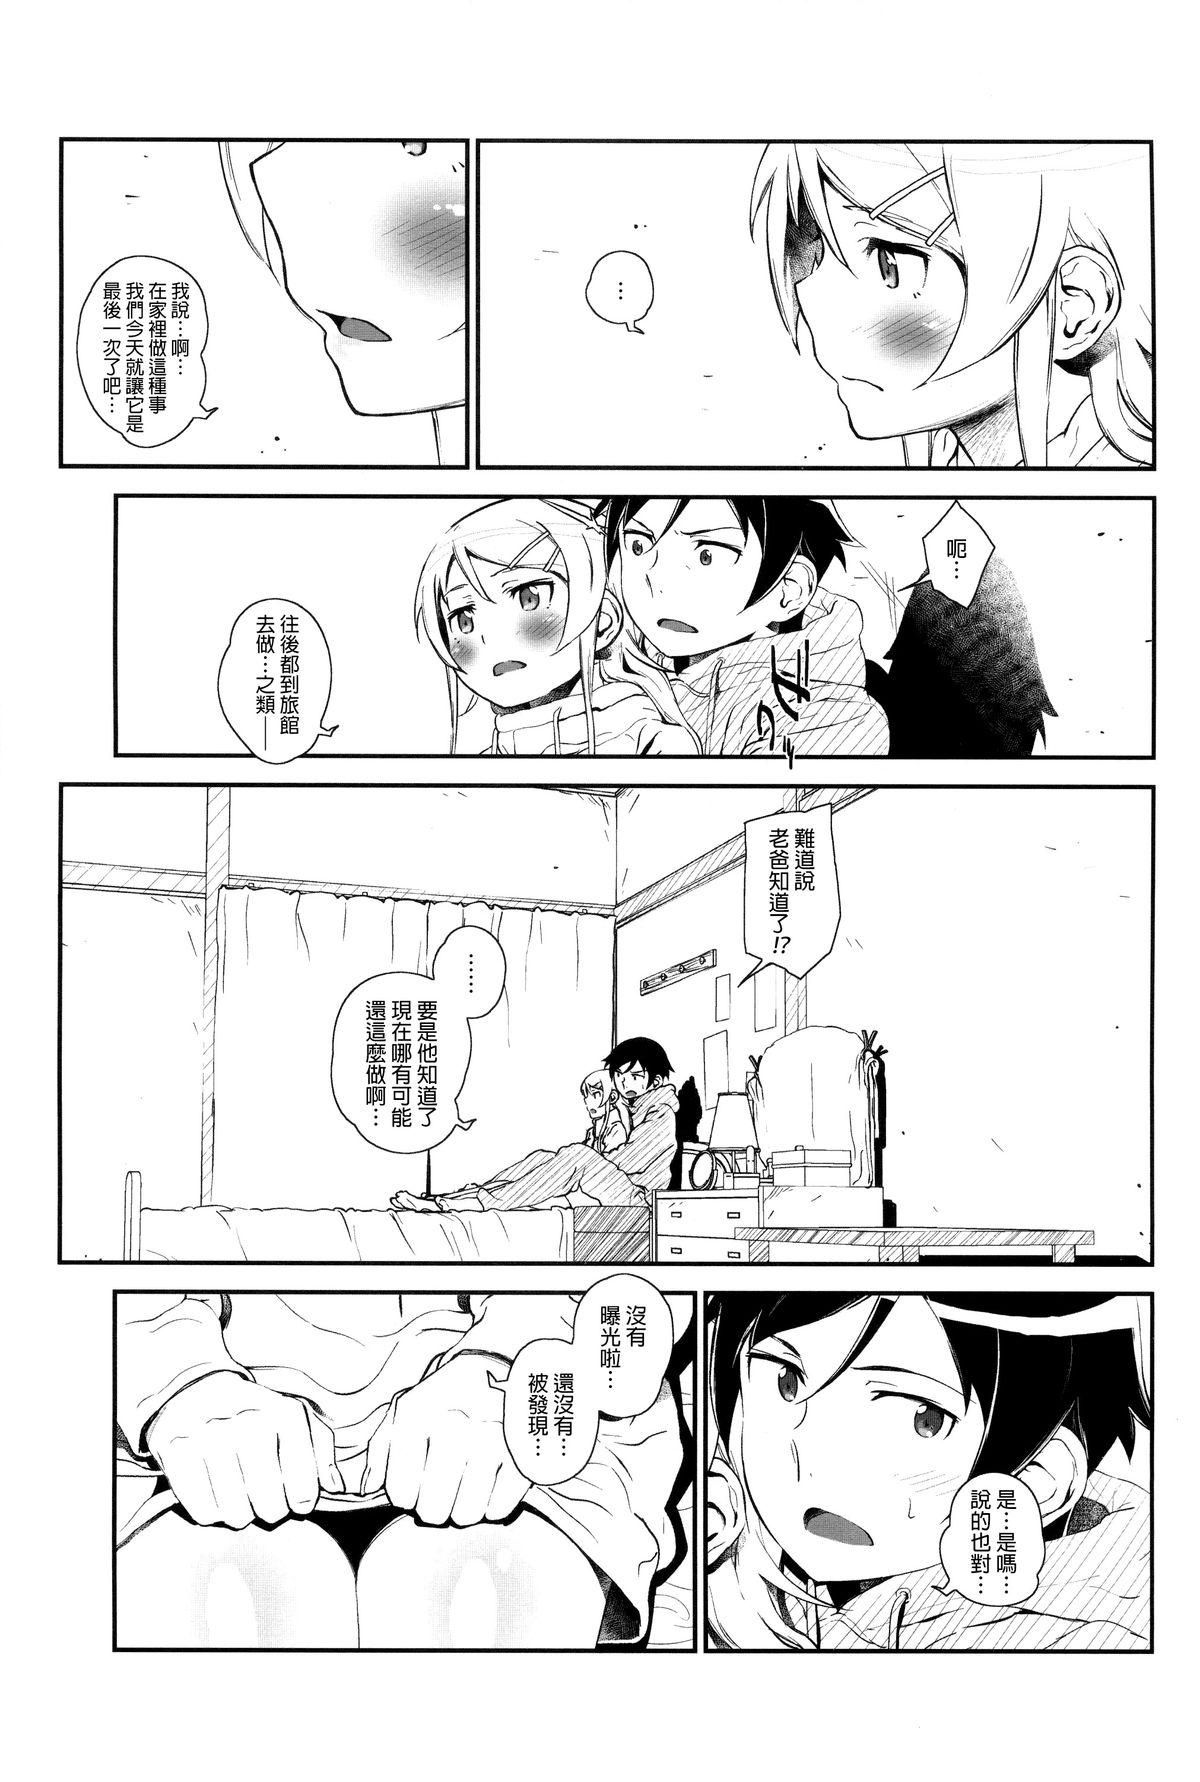 Brazzers Hoshikuzu Namida 4 - Ore no imouto ga konna ni kawaii wake ga nai Cums - Page 10